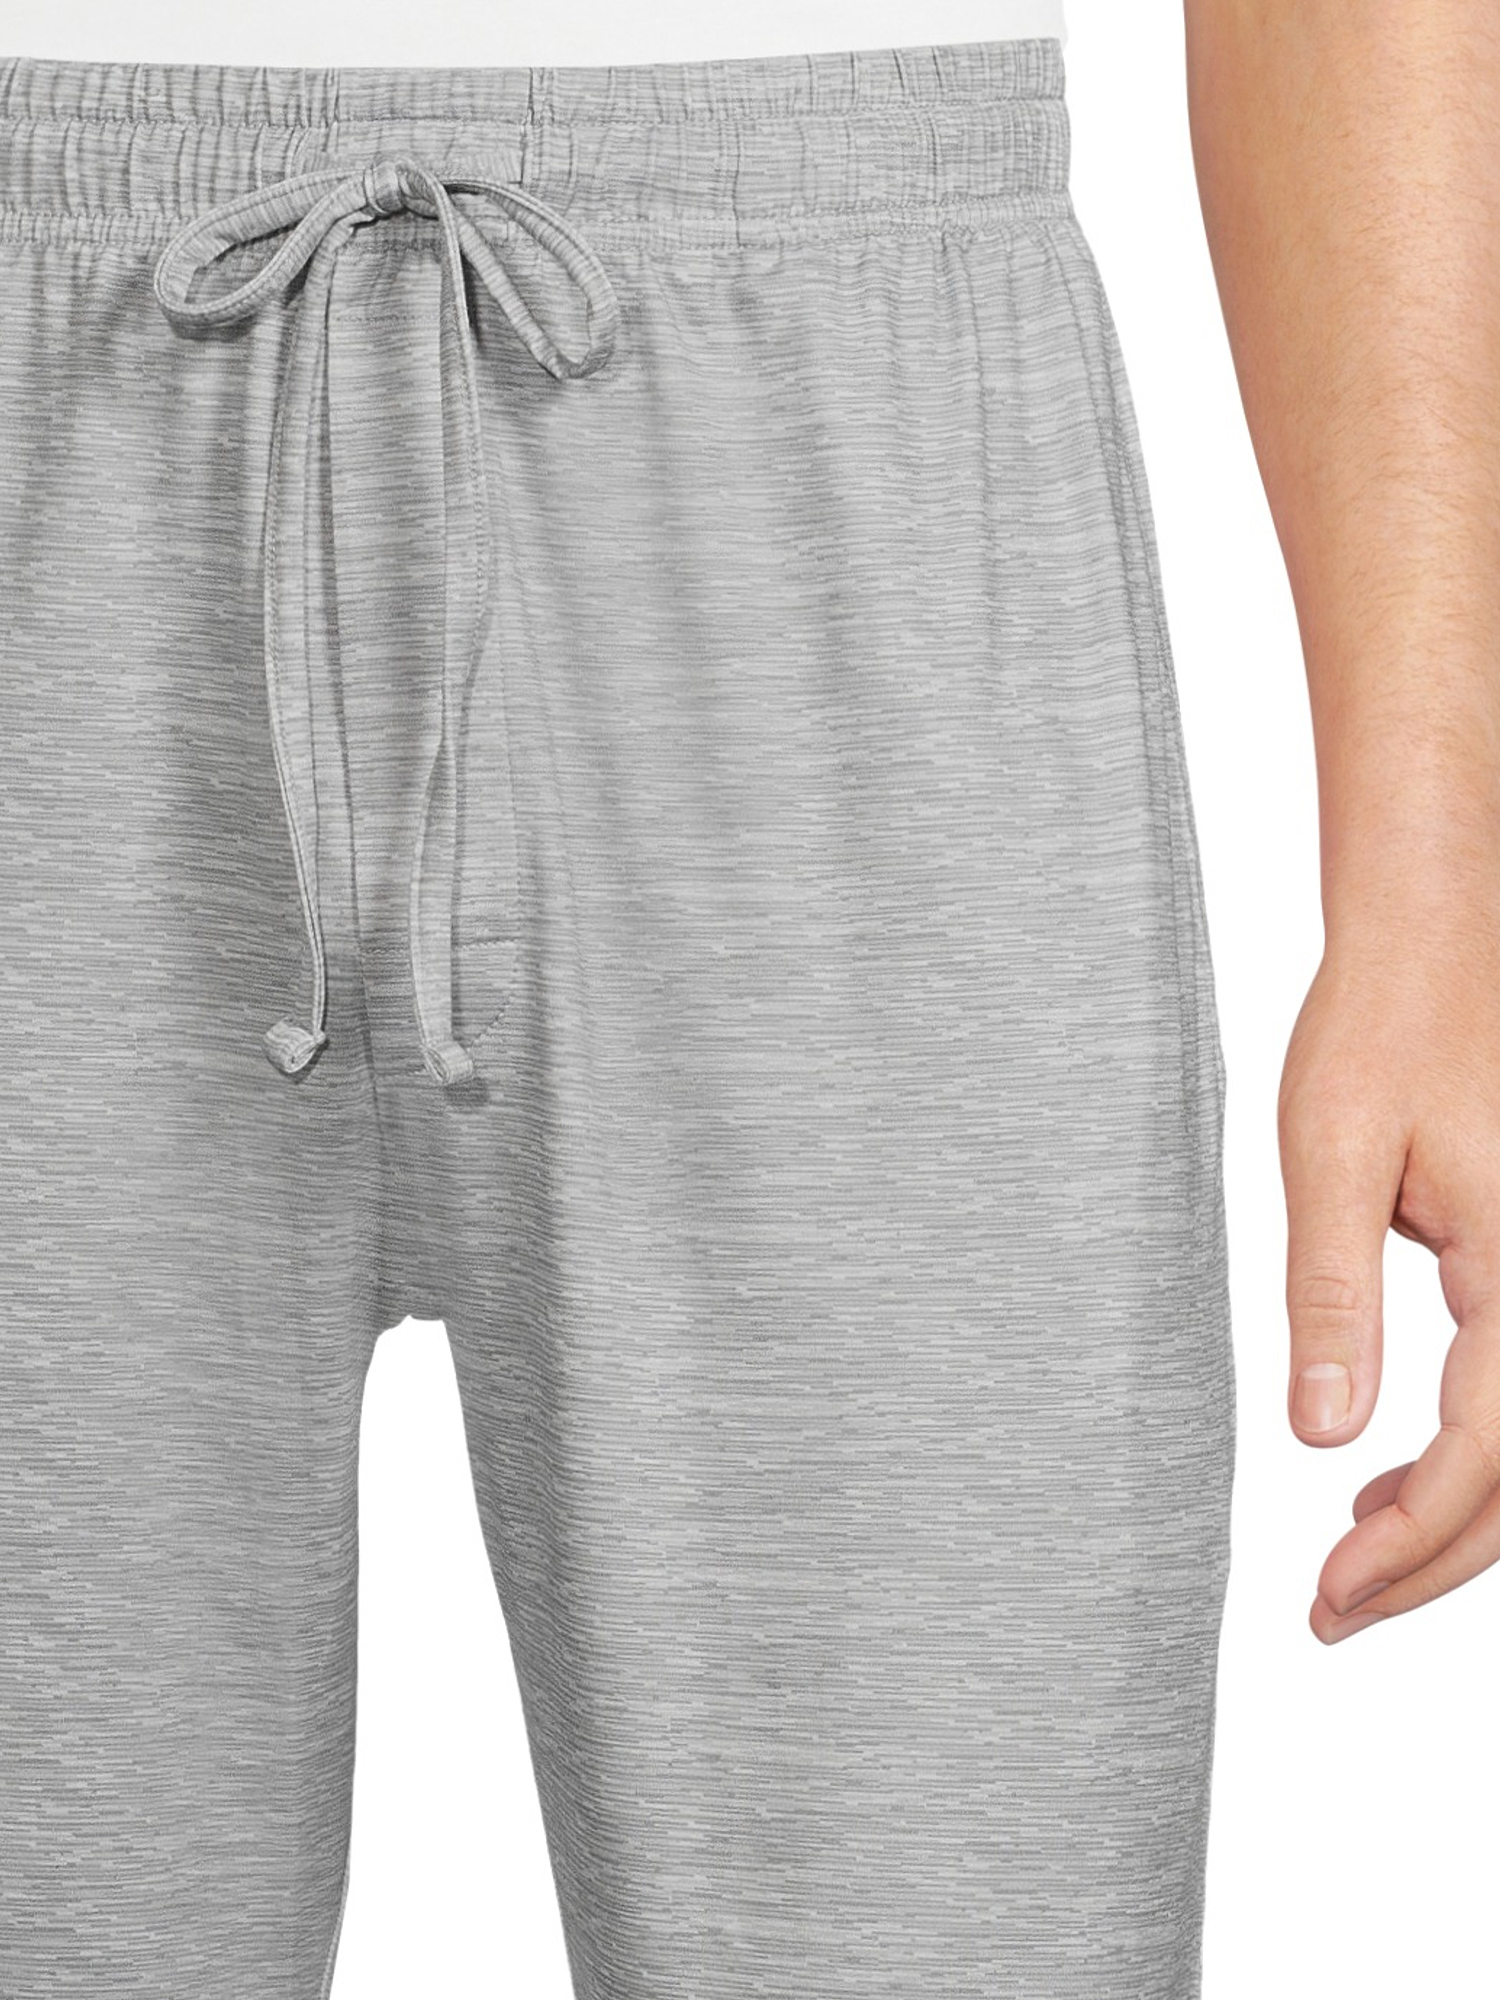 Hanes Men's Luxe Pajama Pants - Walmart.com